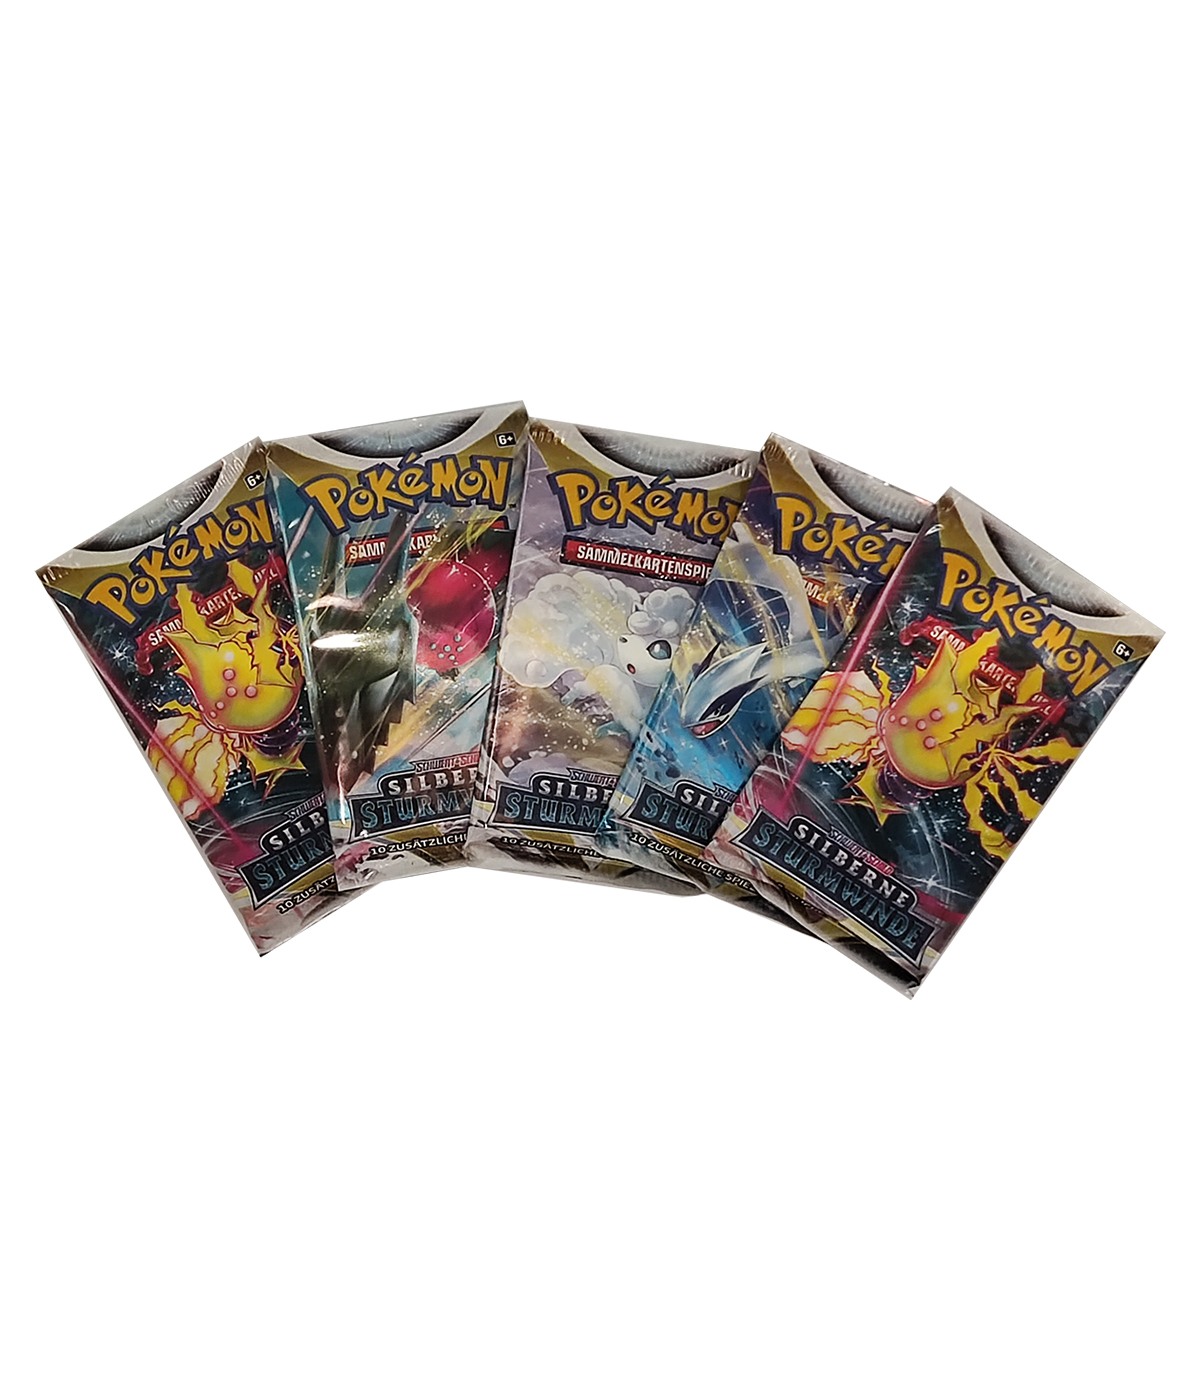 Pokémon „Schwert & Schild - Silberne Sturmwinde“ - Display mit 18 Boosterpacks 